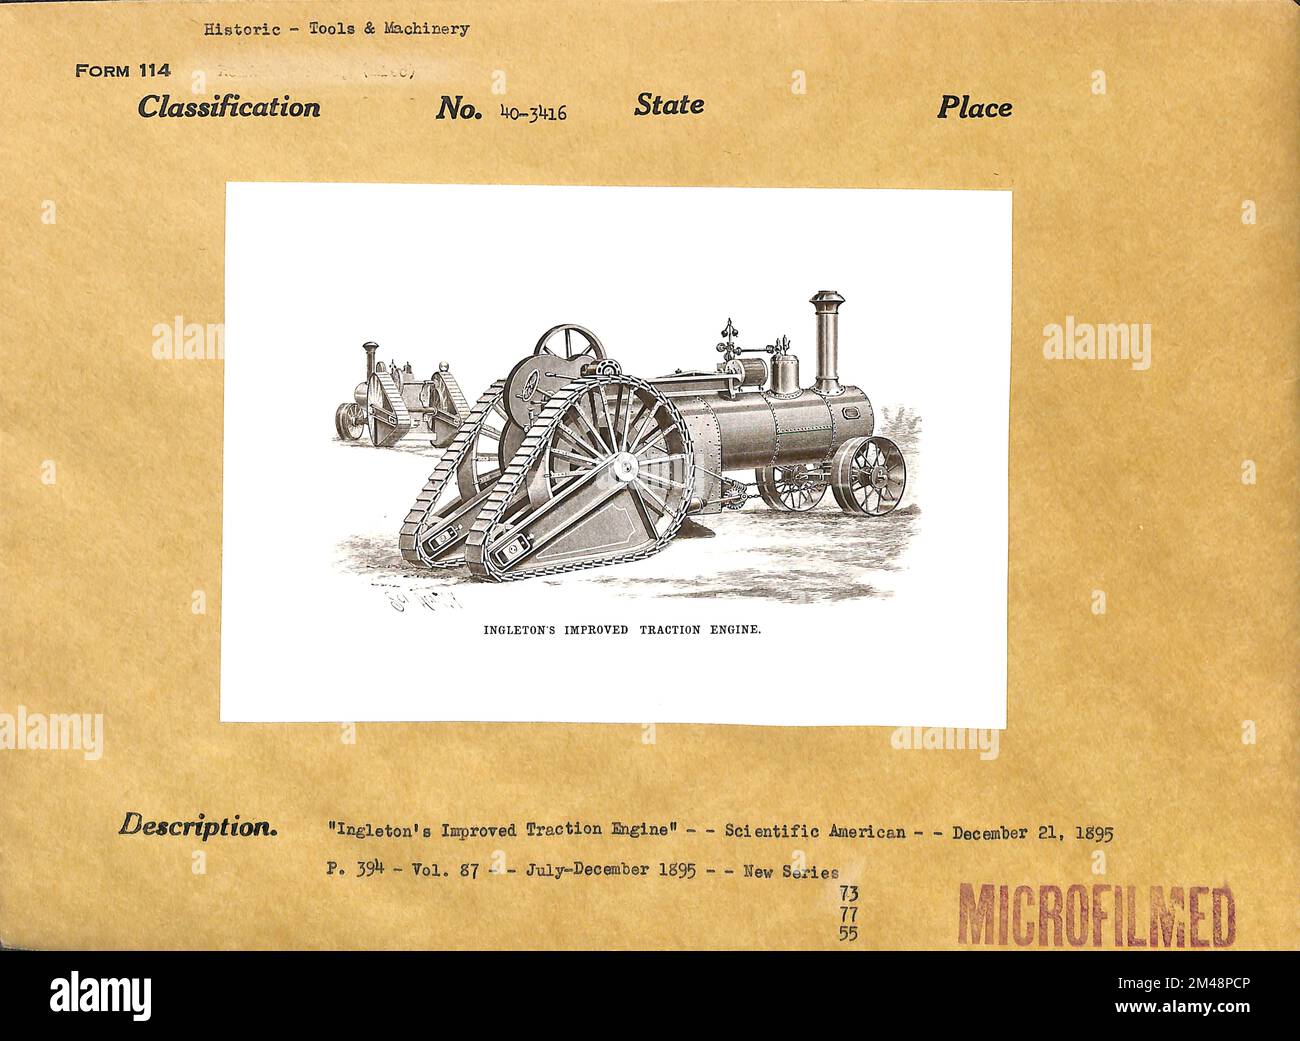 Die verbesserte Traktionsmaschine von Ingleton. Originalüberschrift: "Ingleton's Improved Traction Engine" - Scientific American - 21. Dezember 1895. S. 394 - Vol 87 - Juli-Dezember 1895 - - Neue Serie. Stockfoto